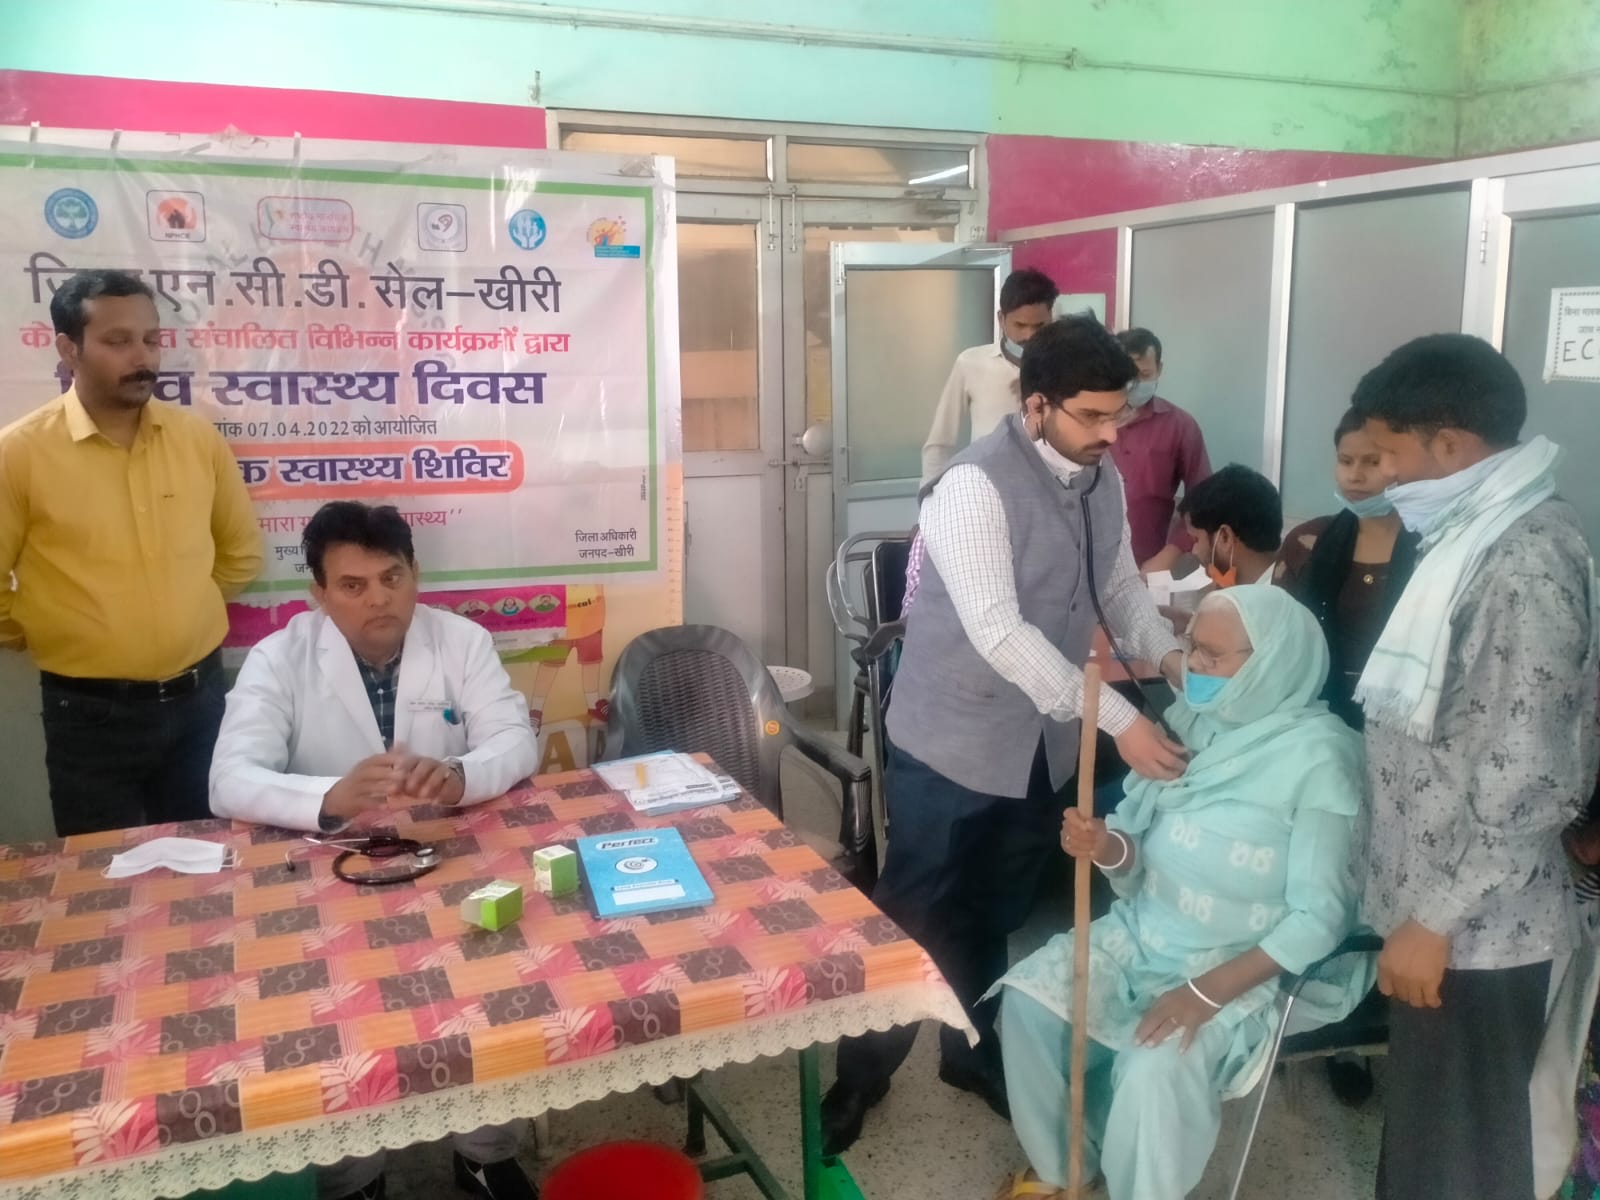 विश्व स्वास्थ्य दिवस के अवसर पर जिले भर में आयोजित कैम्पों में 1600 से अधिक लोगों की हुई जांच | New India Times